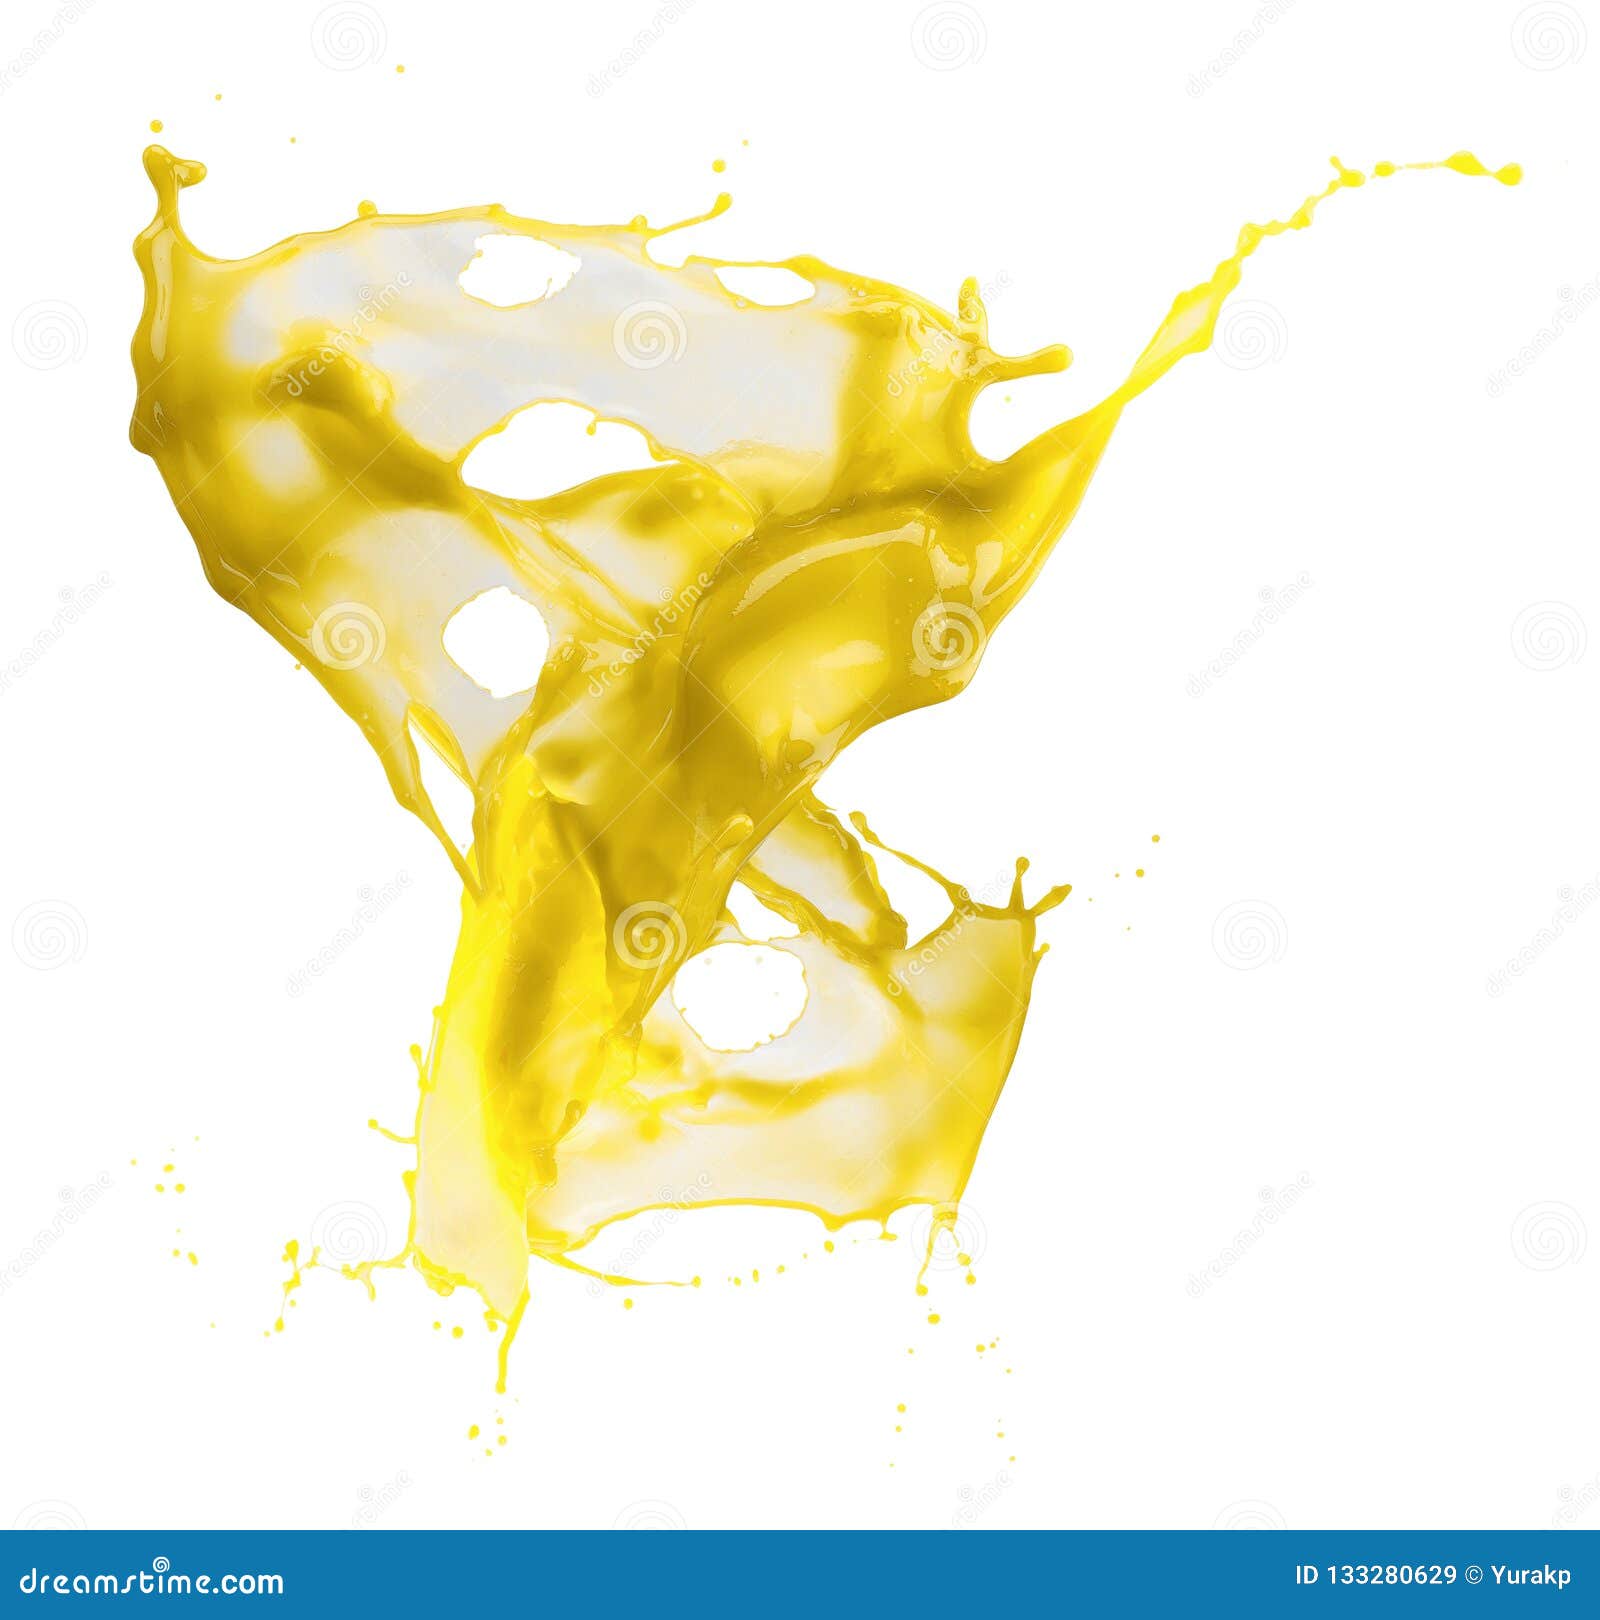 Yellow Paint Splash Isolated on a White Background Stock Image - Image ...